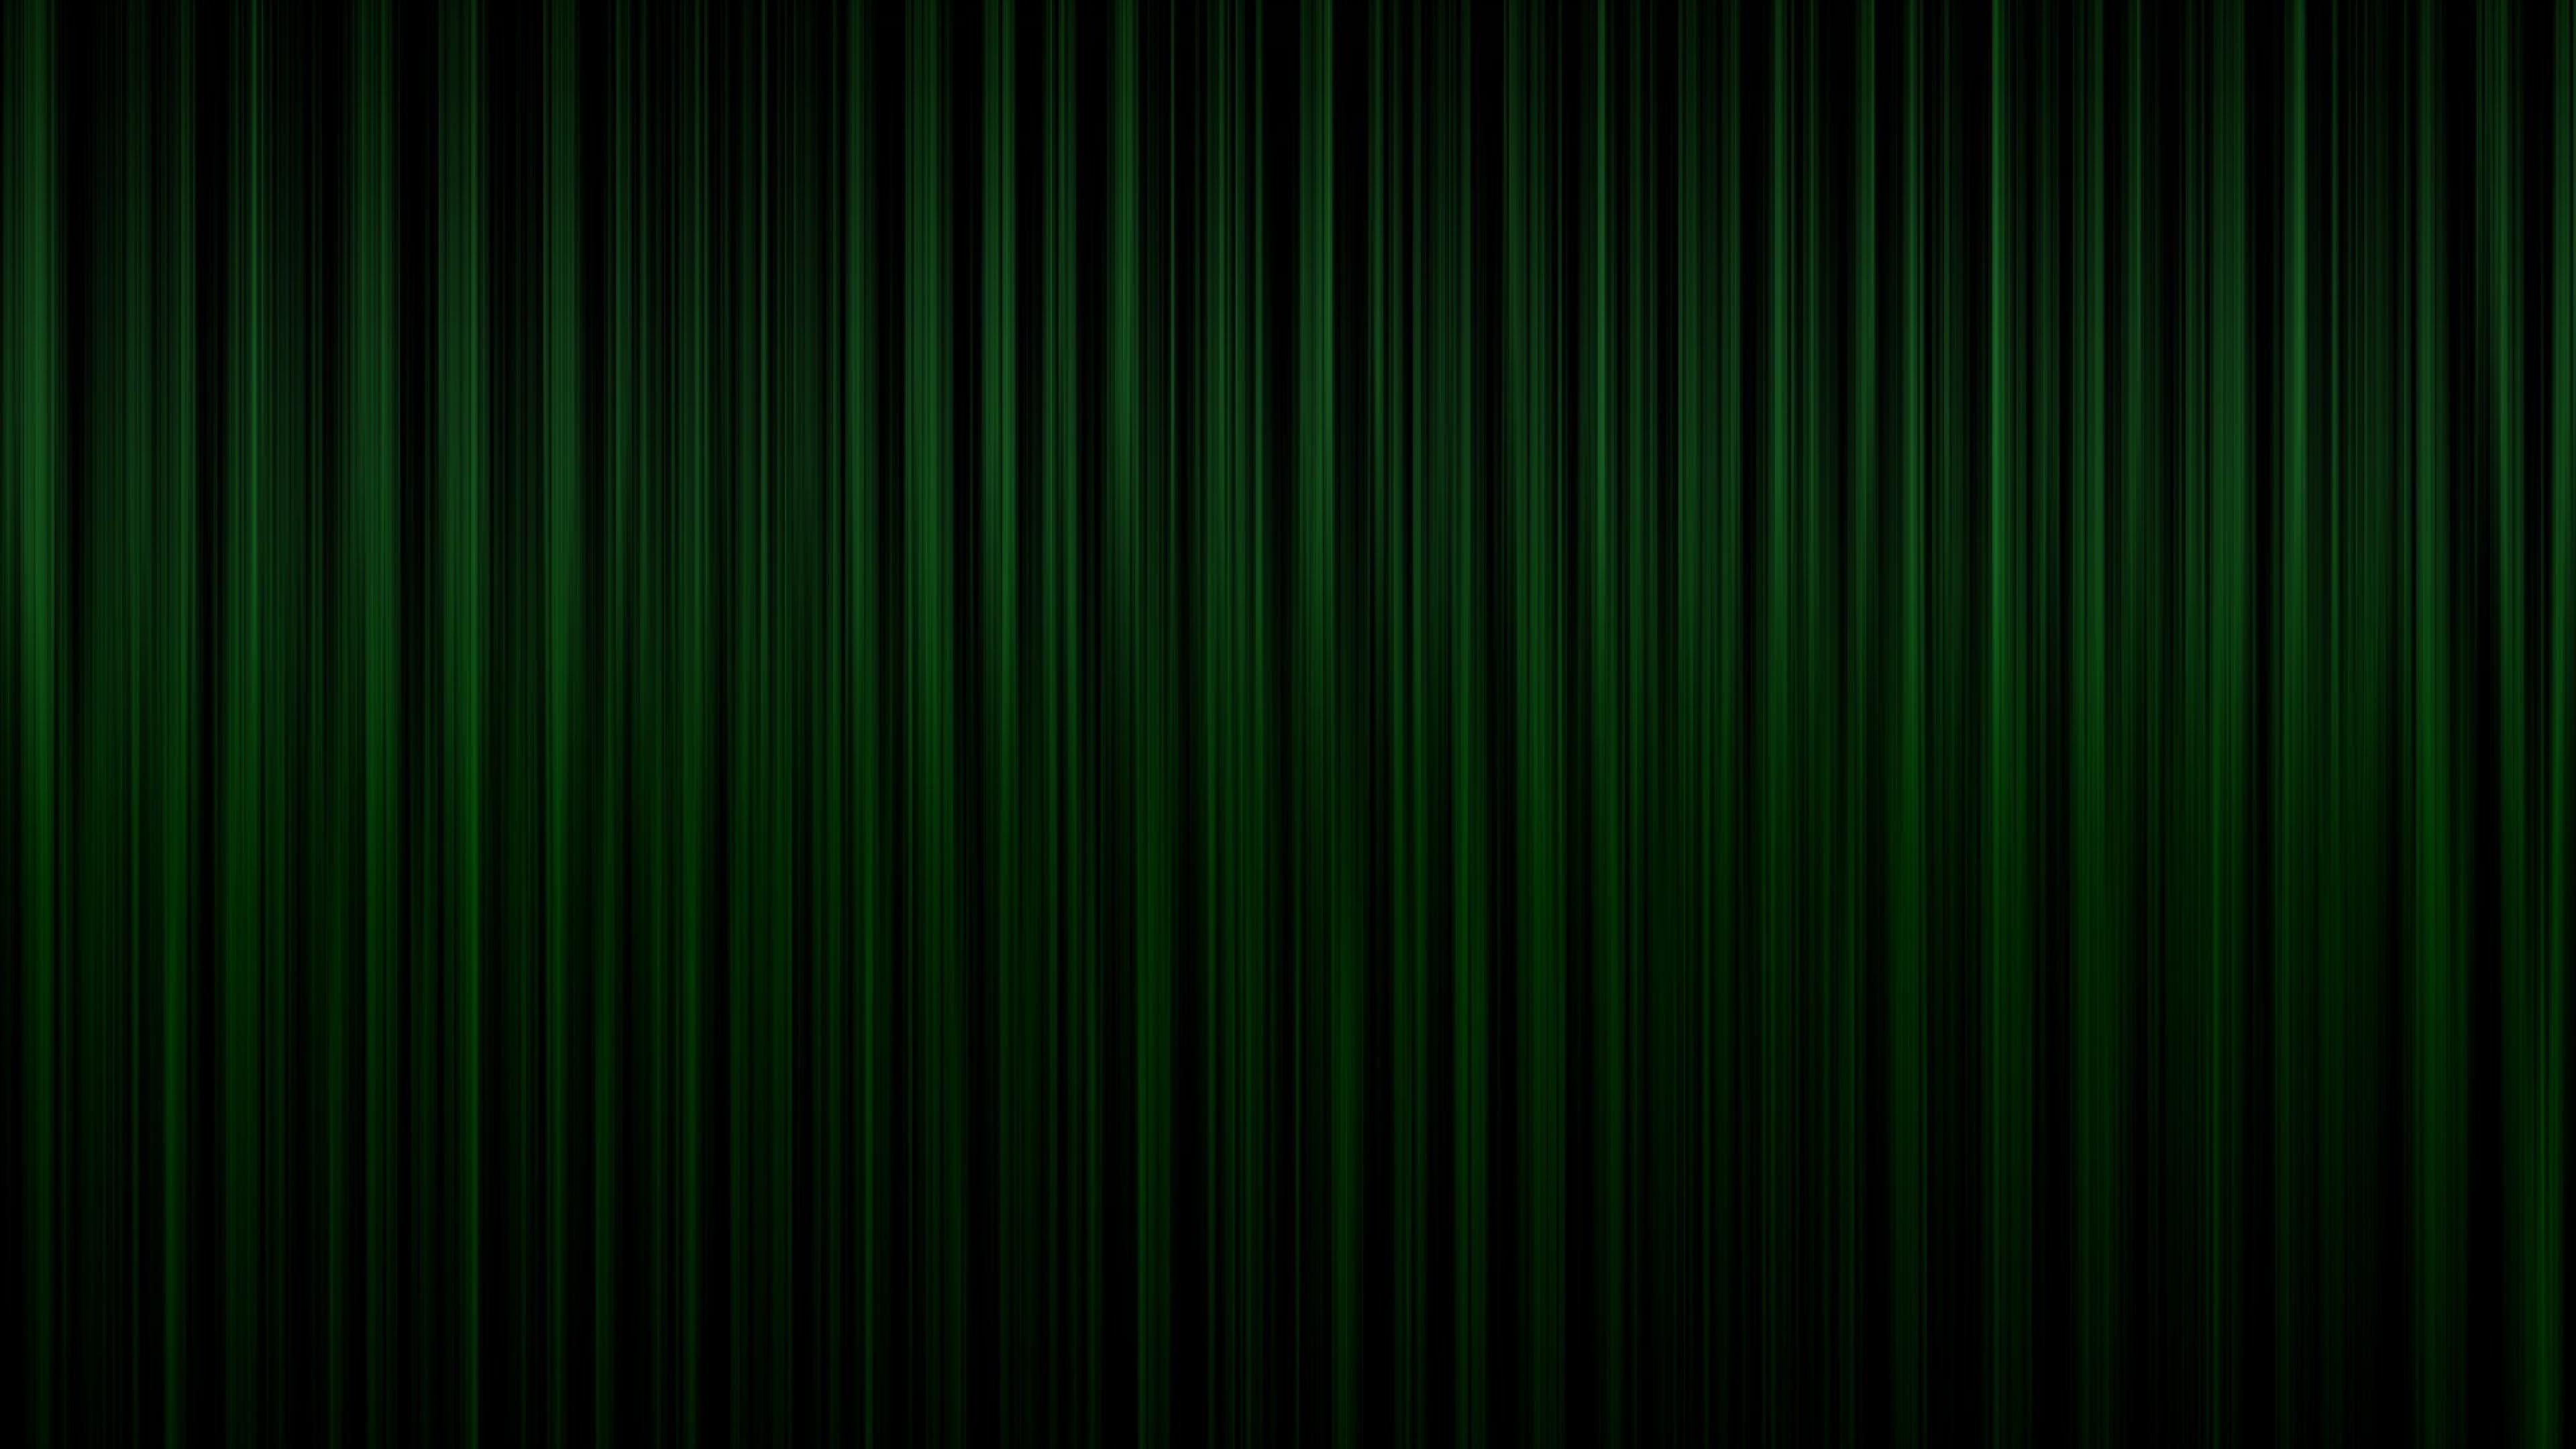  Green Bands Vertical Dark Shadow Wallpaper Background 4K Ultra HD